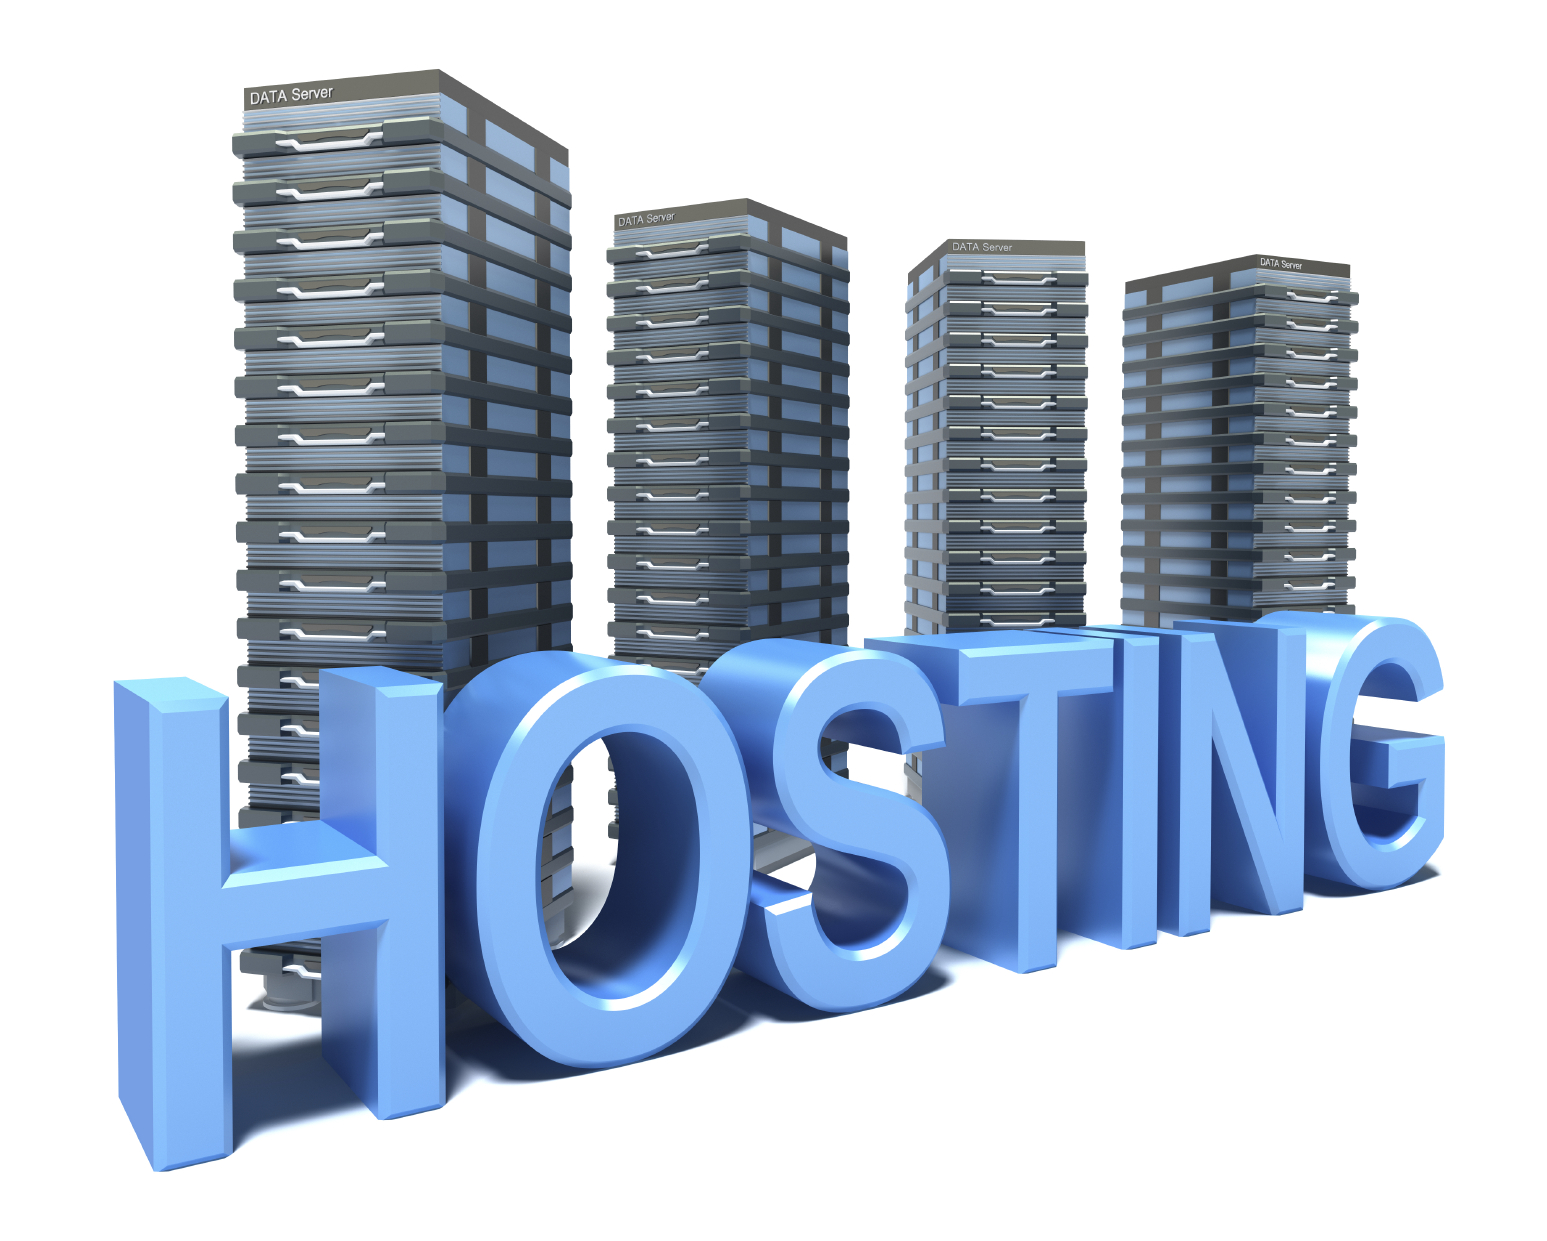 Is web hosting